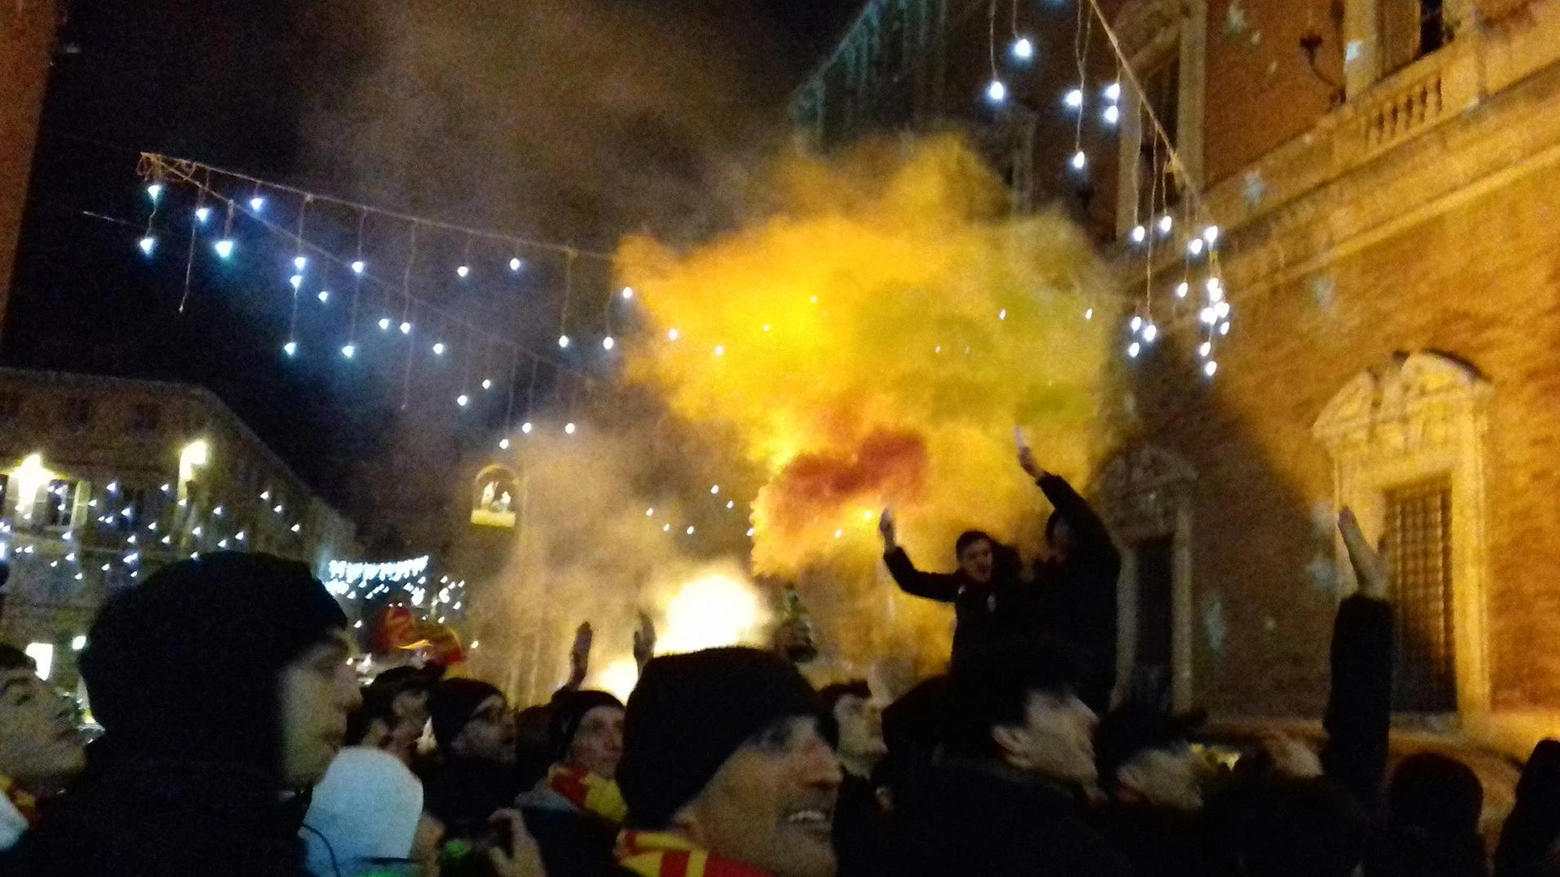 L’Osimana festeggia tutta la notte in città: "Ci siamo tolti una bellissima soddisfazione"